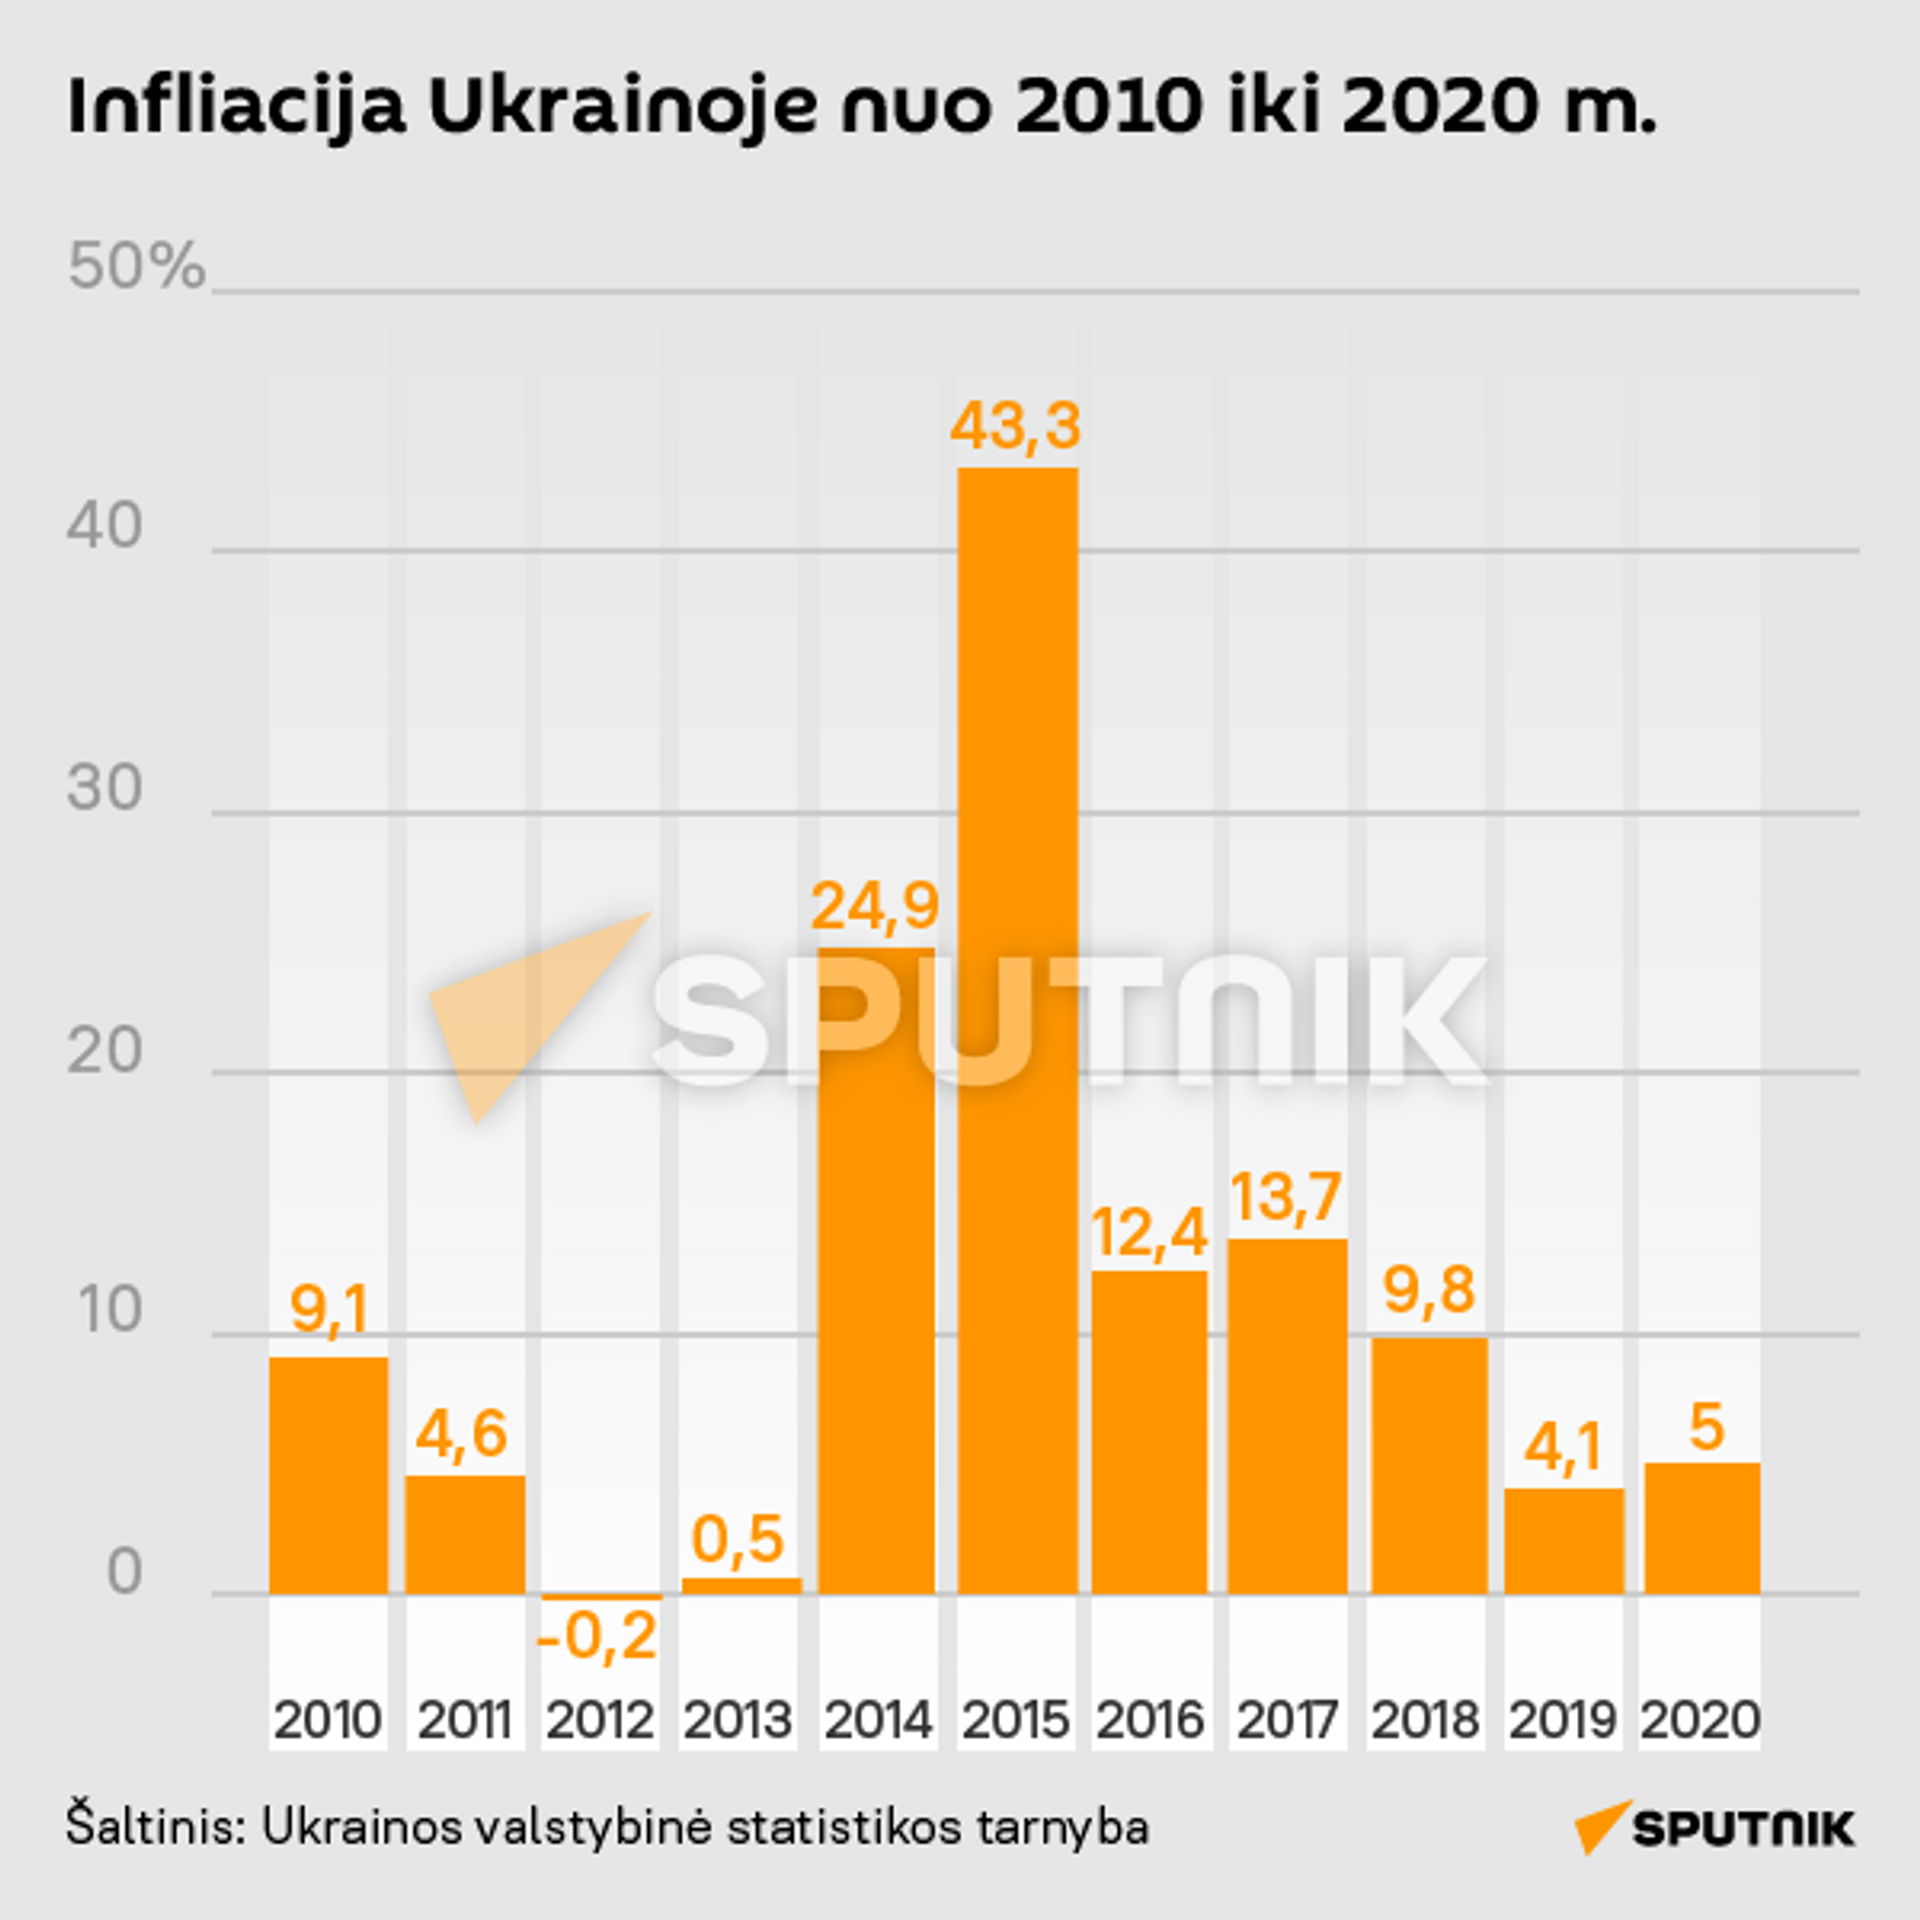 Infliacija Ukrainoje nuo 2010 iki 2020 m. - Sputnik Lietuva, 1920, 19.08.2021